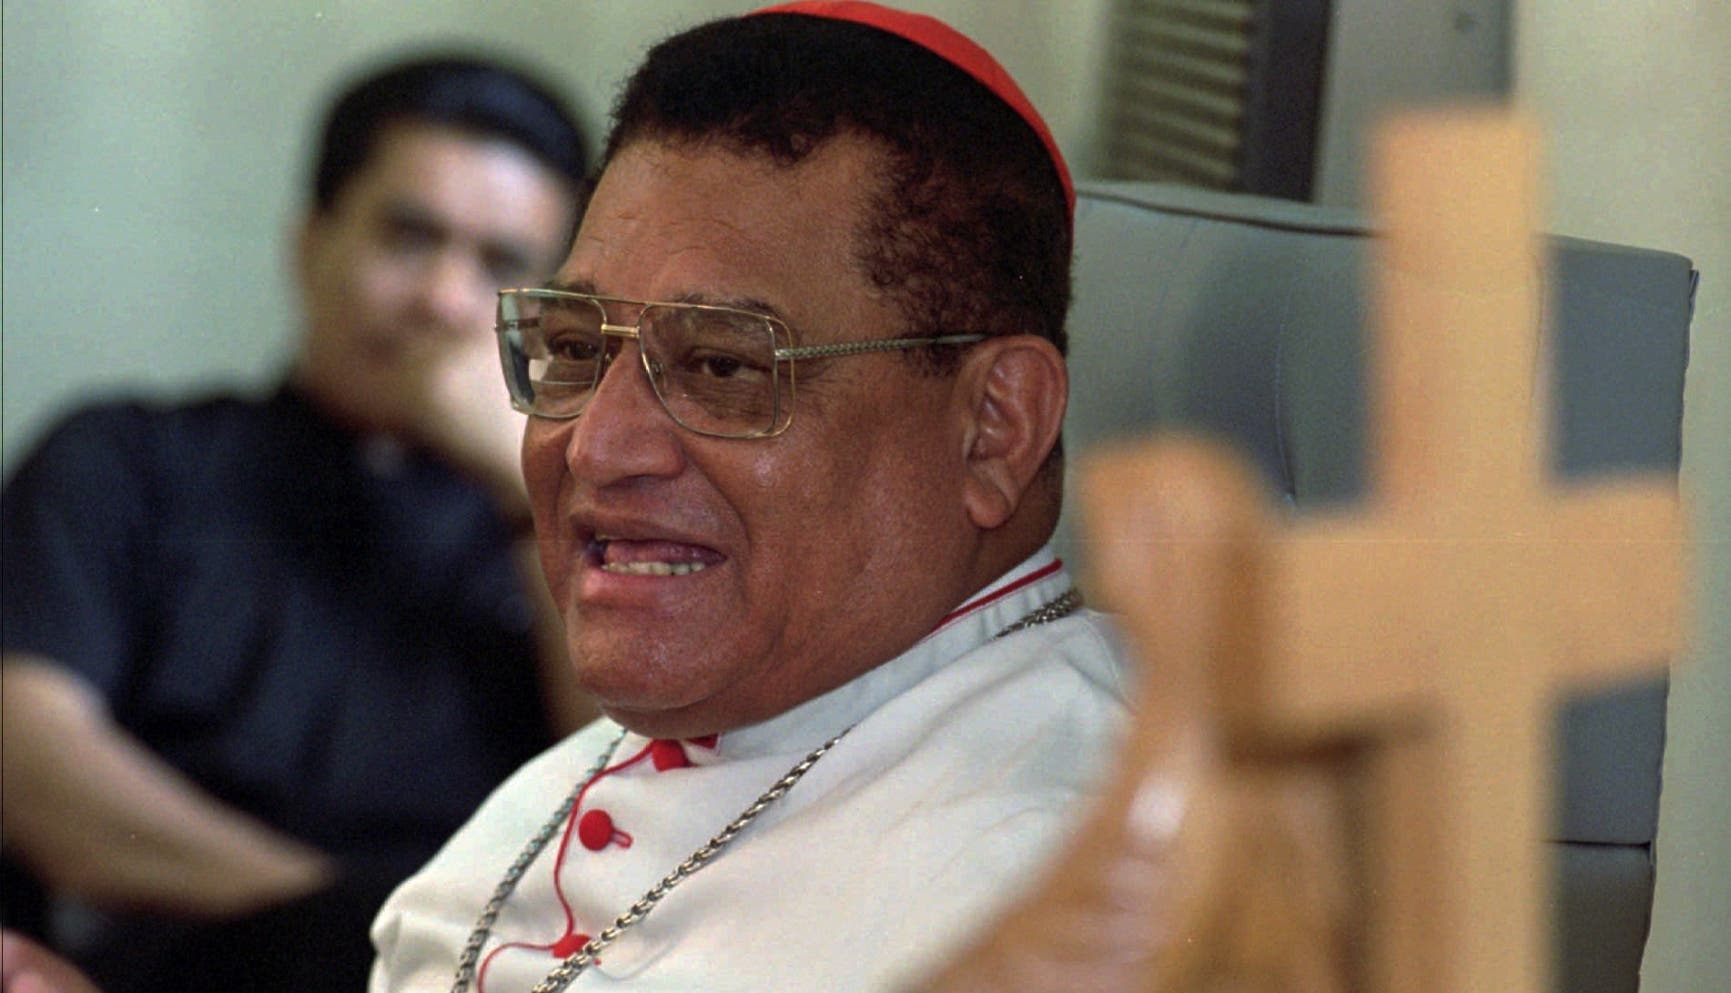 Fallece cardenal nicaragüense Miguel Obando a los 92 años